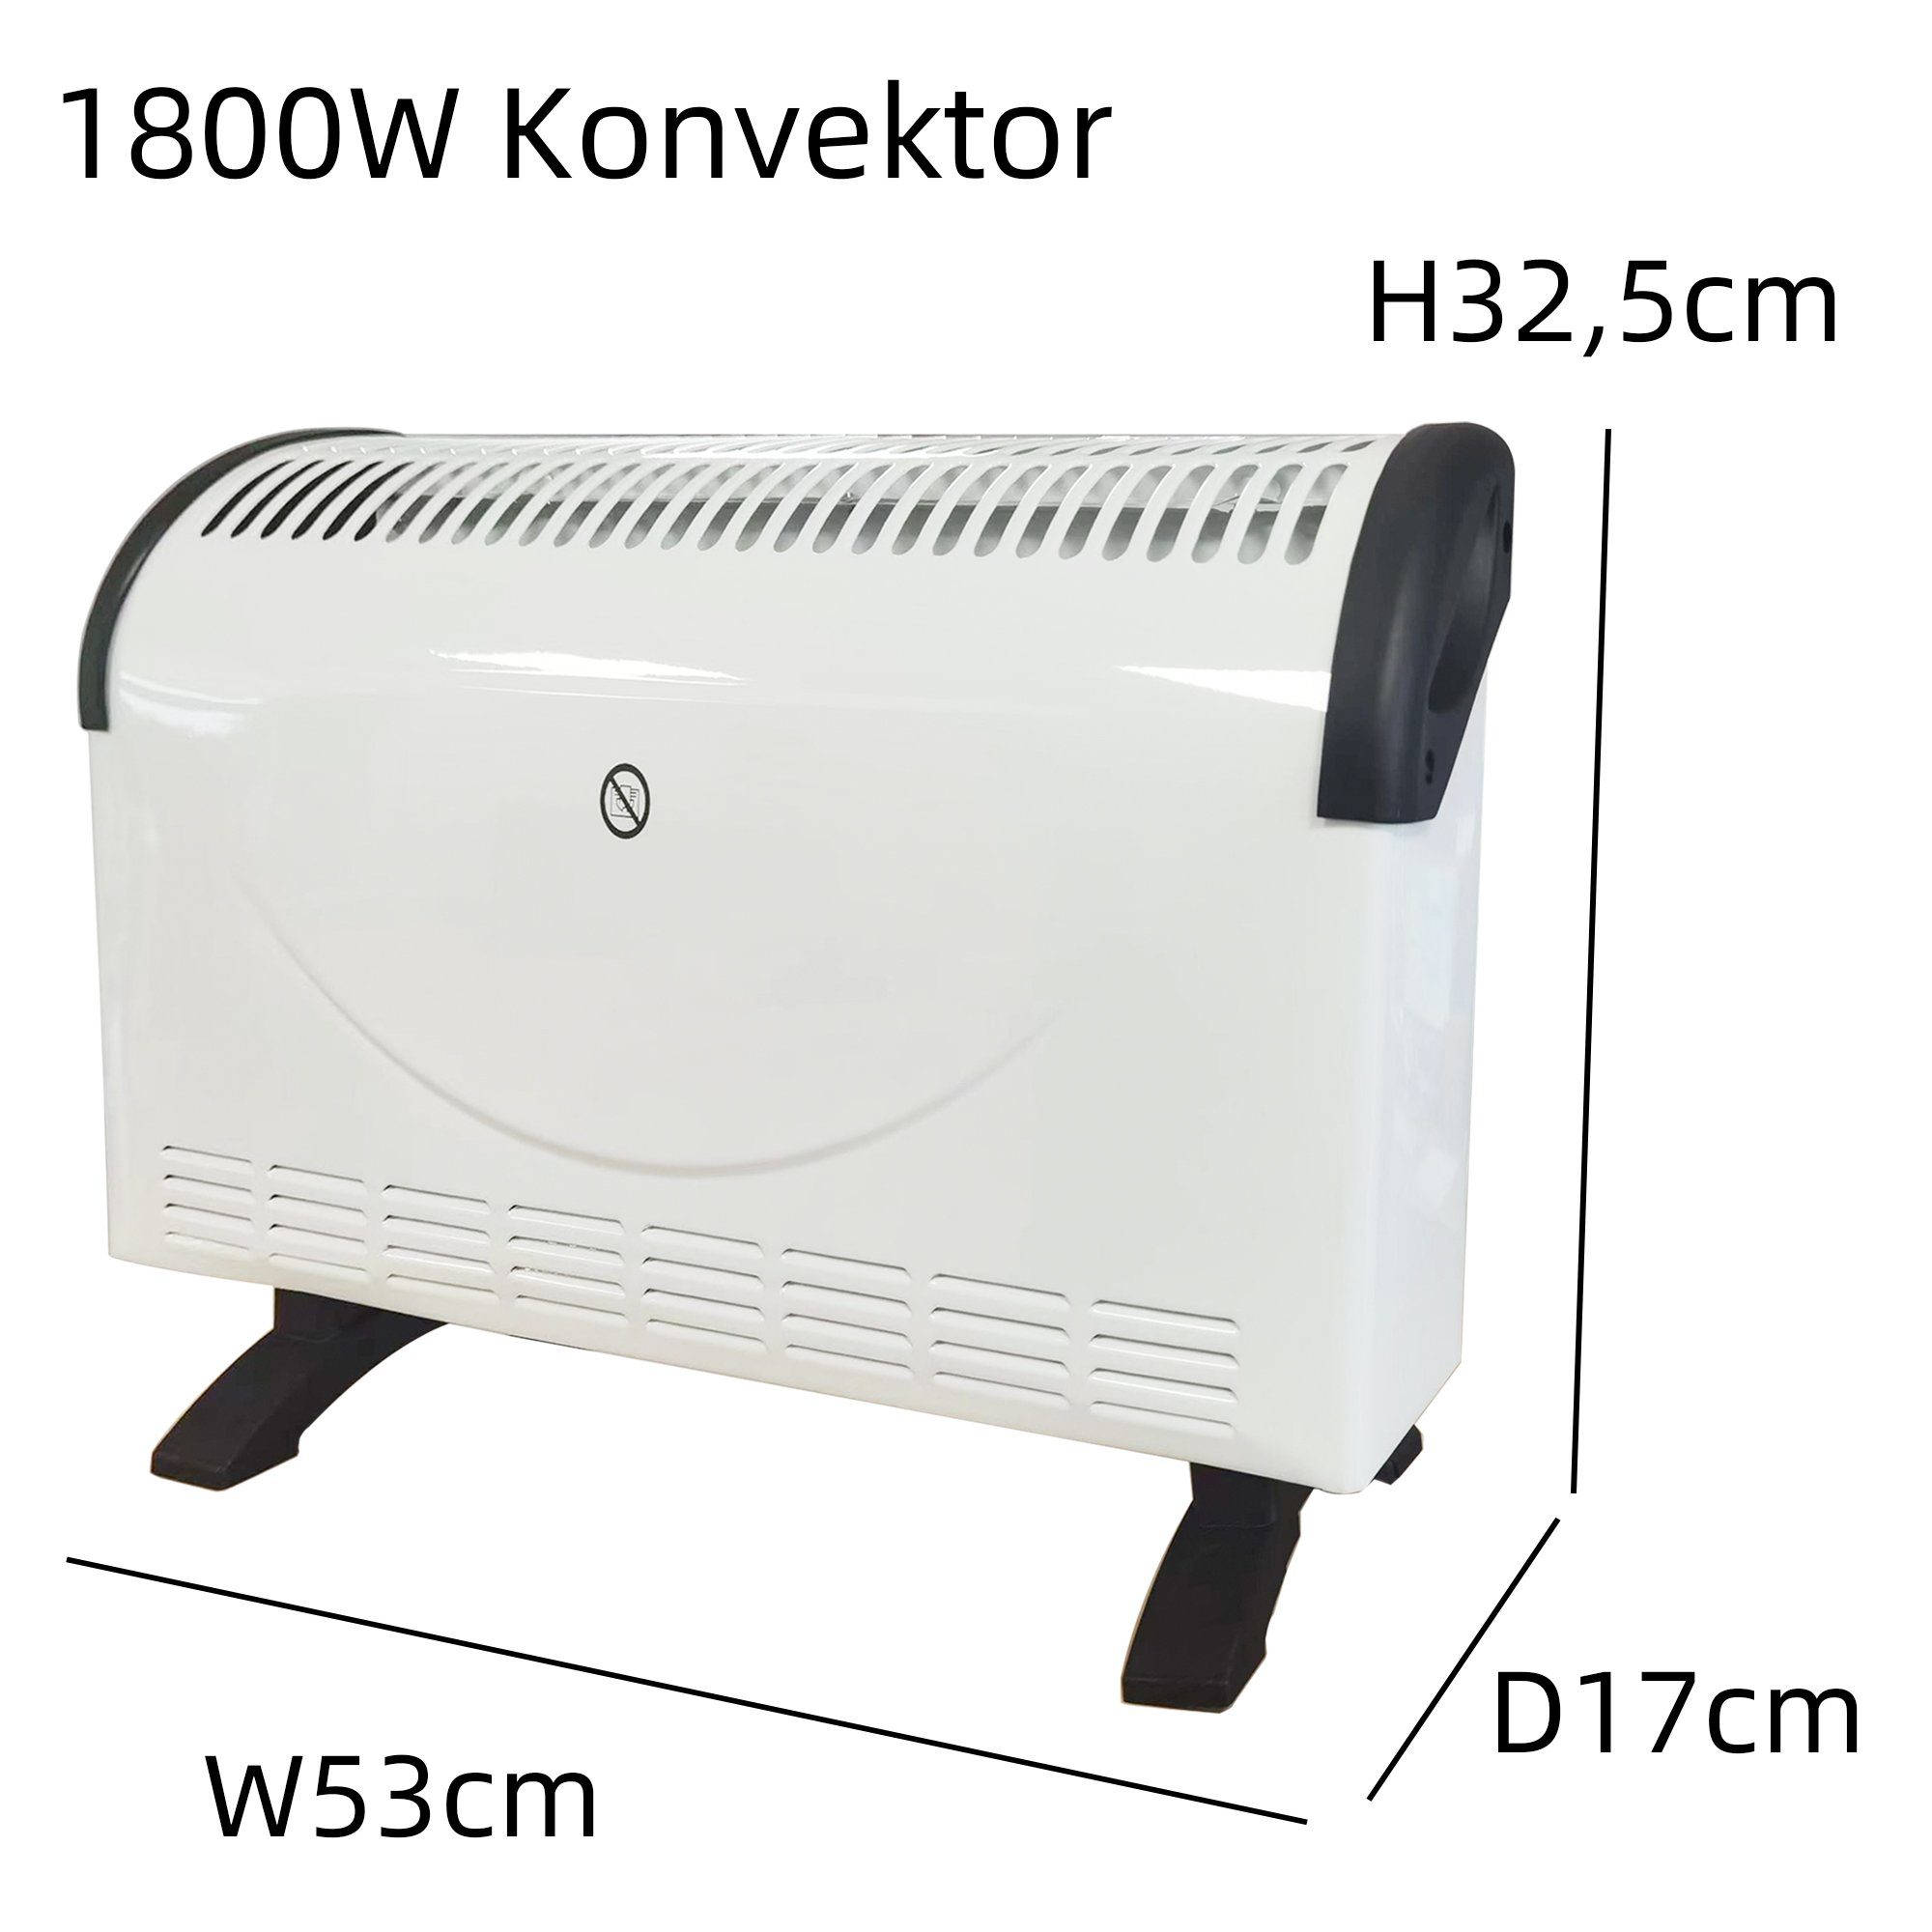 Natsen Konvektor Heizgerät 3 Thermostat mit W Stufen 750/1050/1800 Elektroheizer (Weiß), Heizlüfter, 1800 W